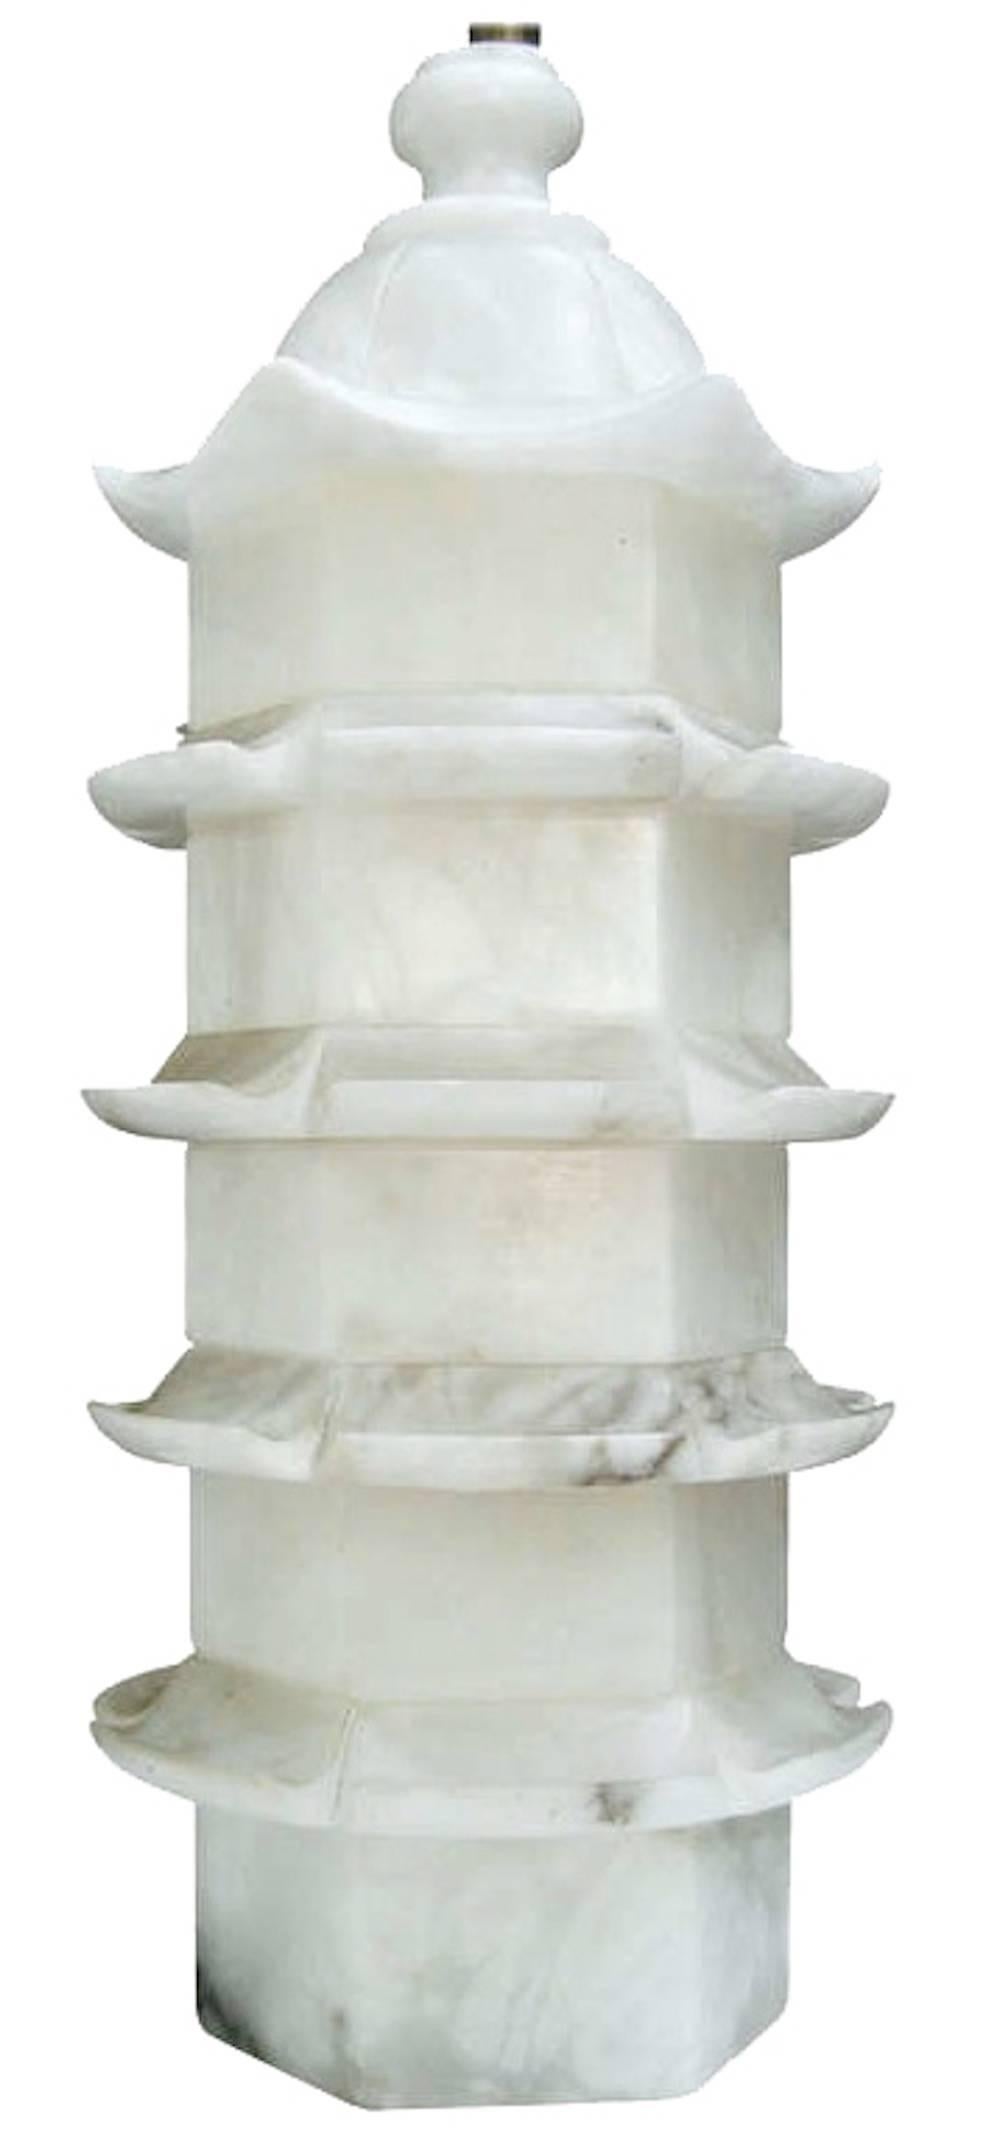 Grande lampe en forme de pagode en marbre sculpté de Chinoiserie. Finale en marbre assortie. Le câblage a été refait à neuf avec une double prise chromée. Fonctionne avec deux ampoules standard (non incluses). Abat-jour non inclus